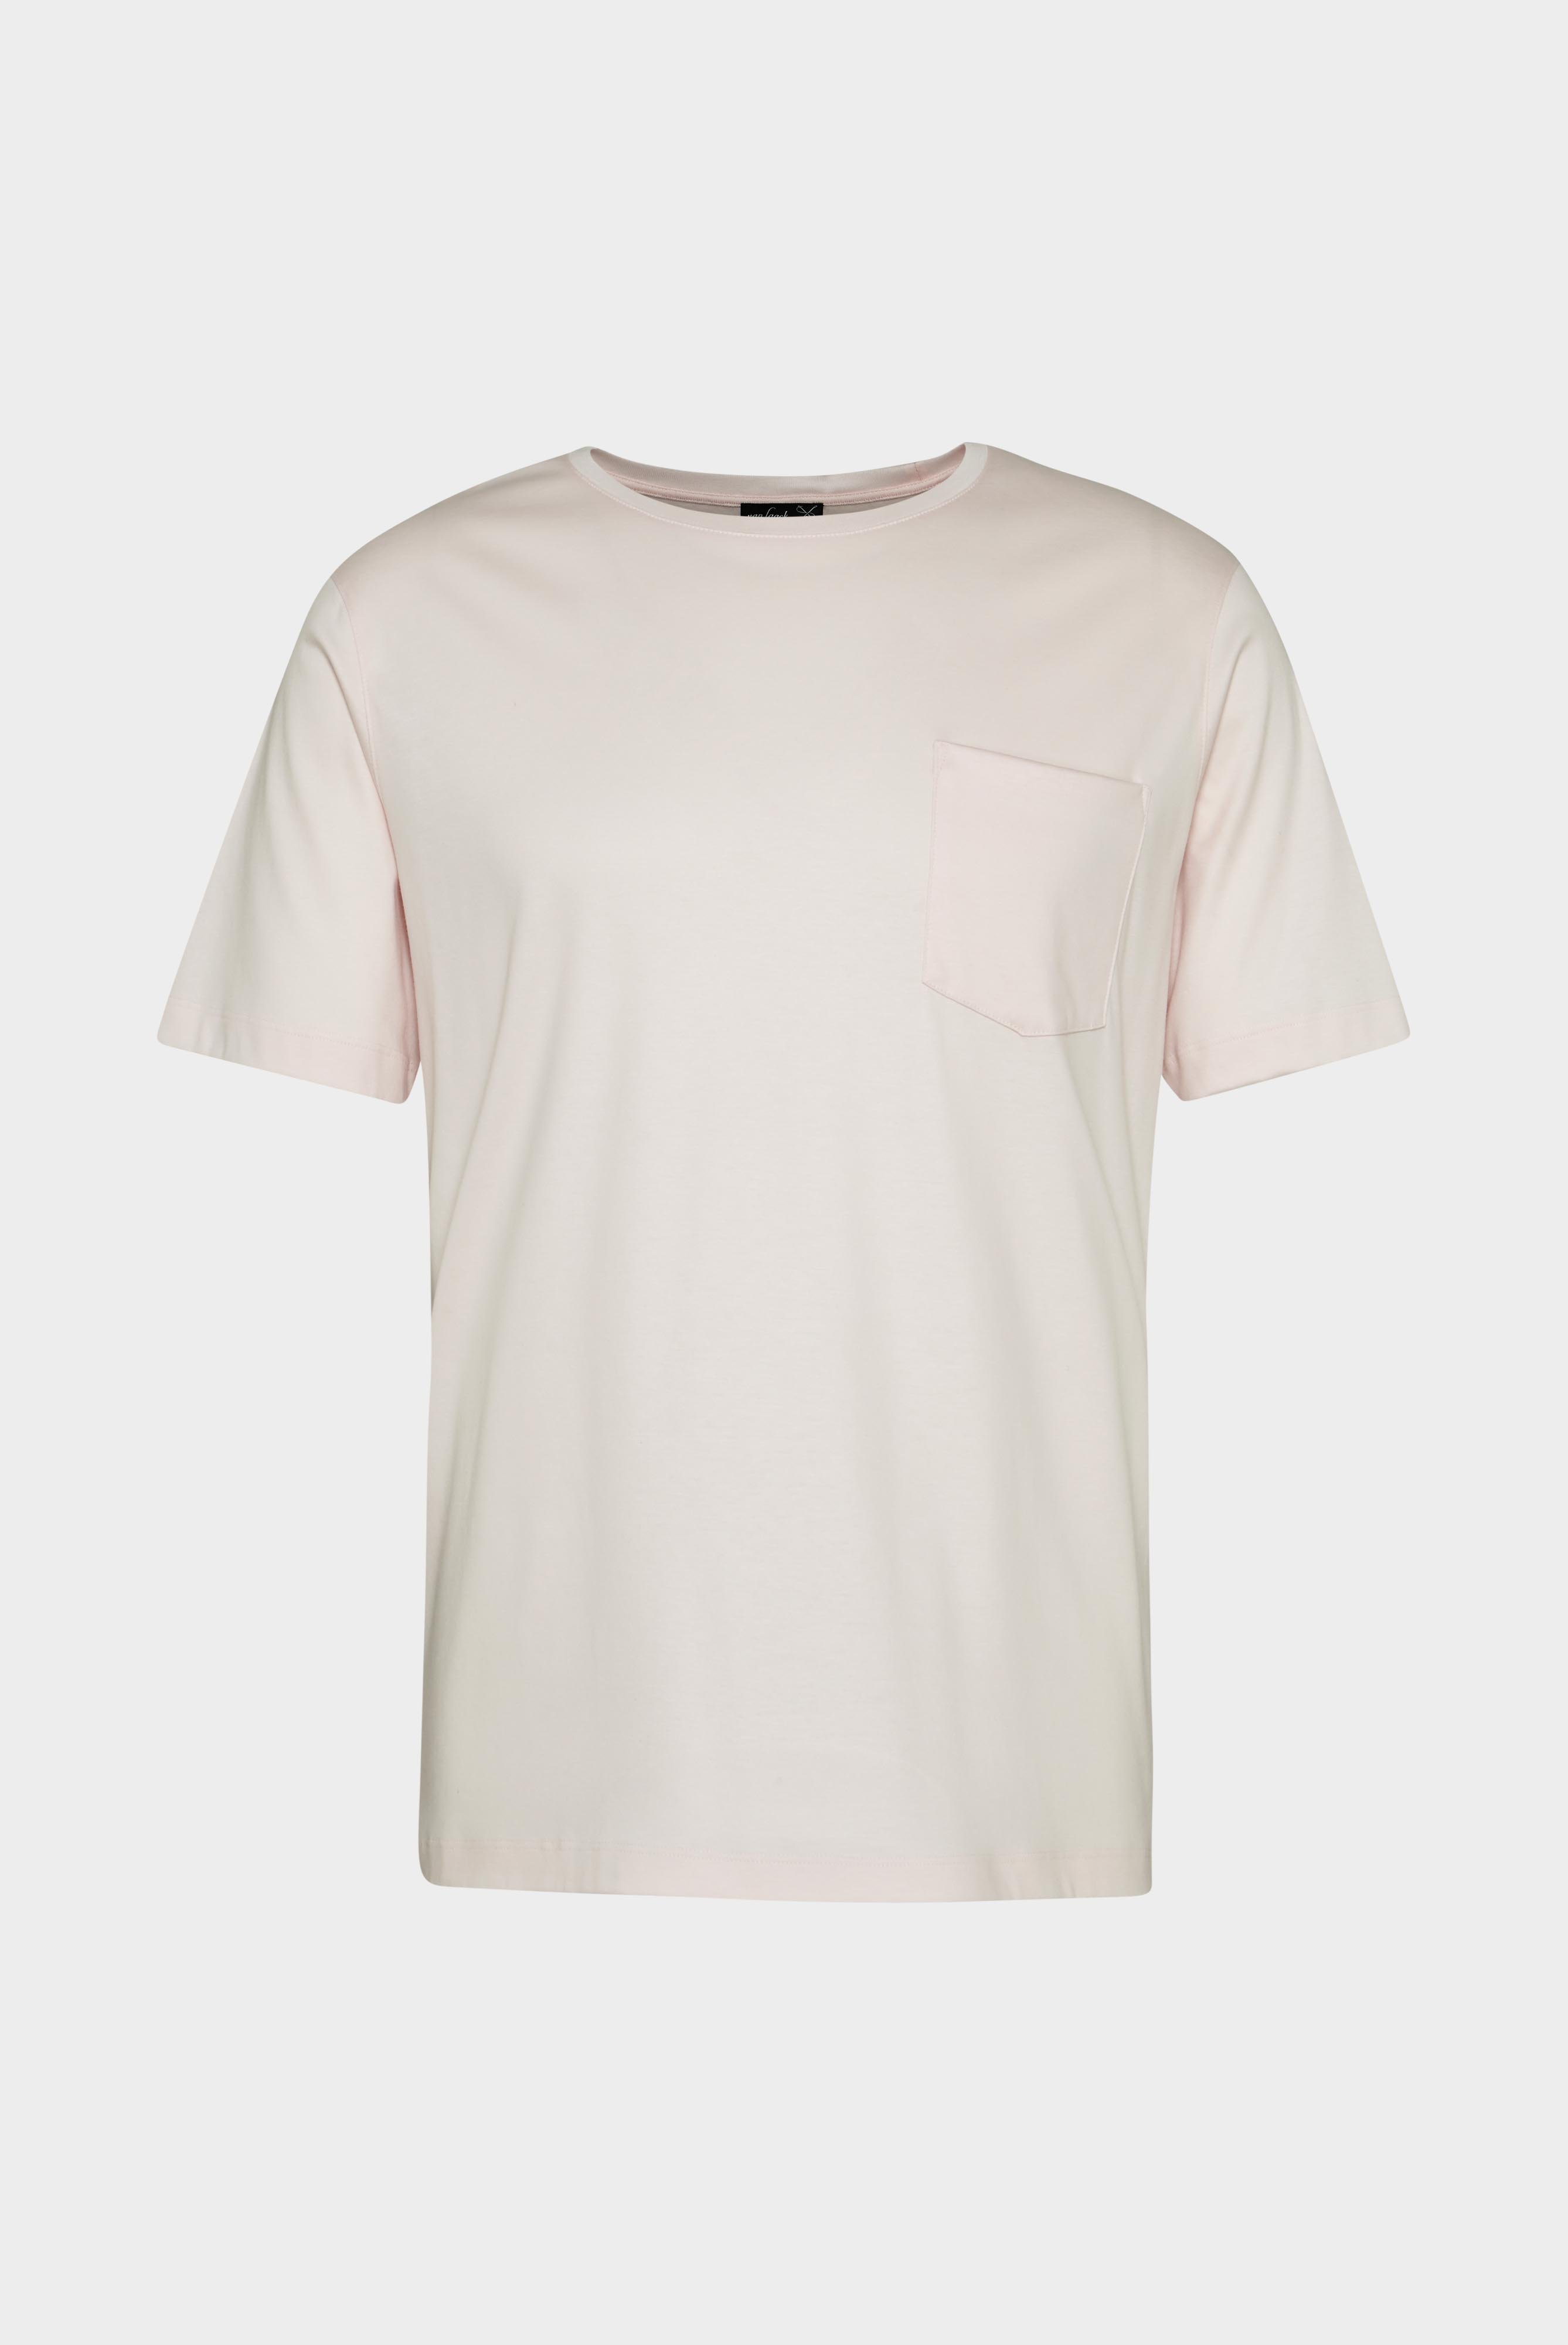 T-Shirts+Oversize Jersey T-Shirt mit Brusttasche+20.1776.GZ.180031.510.L